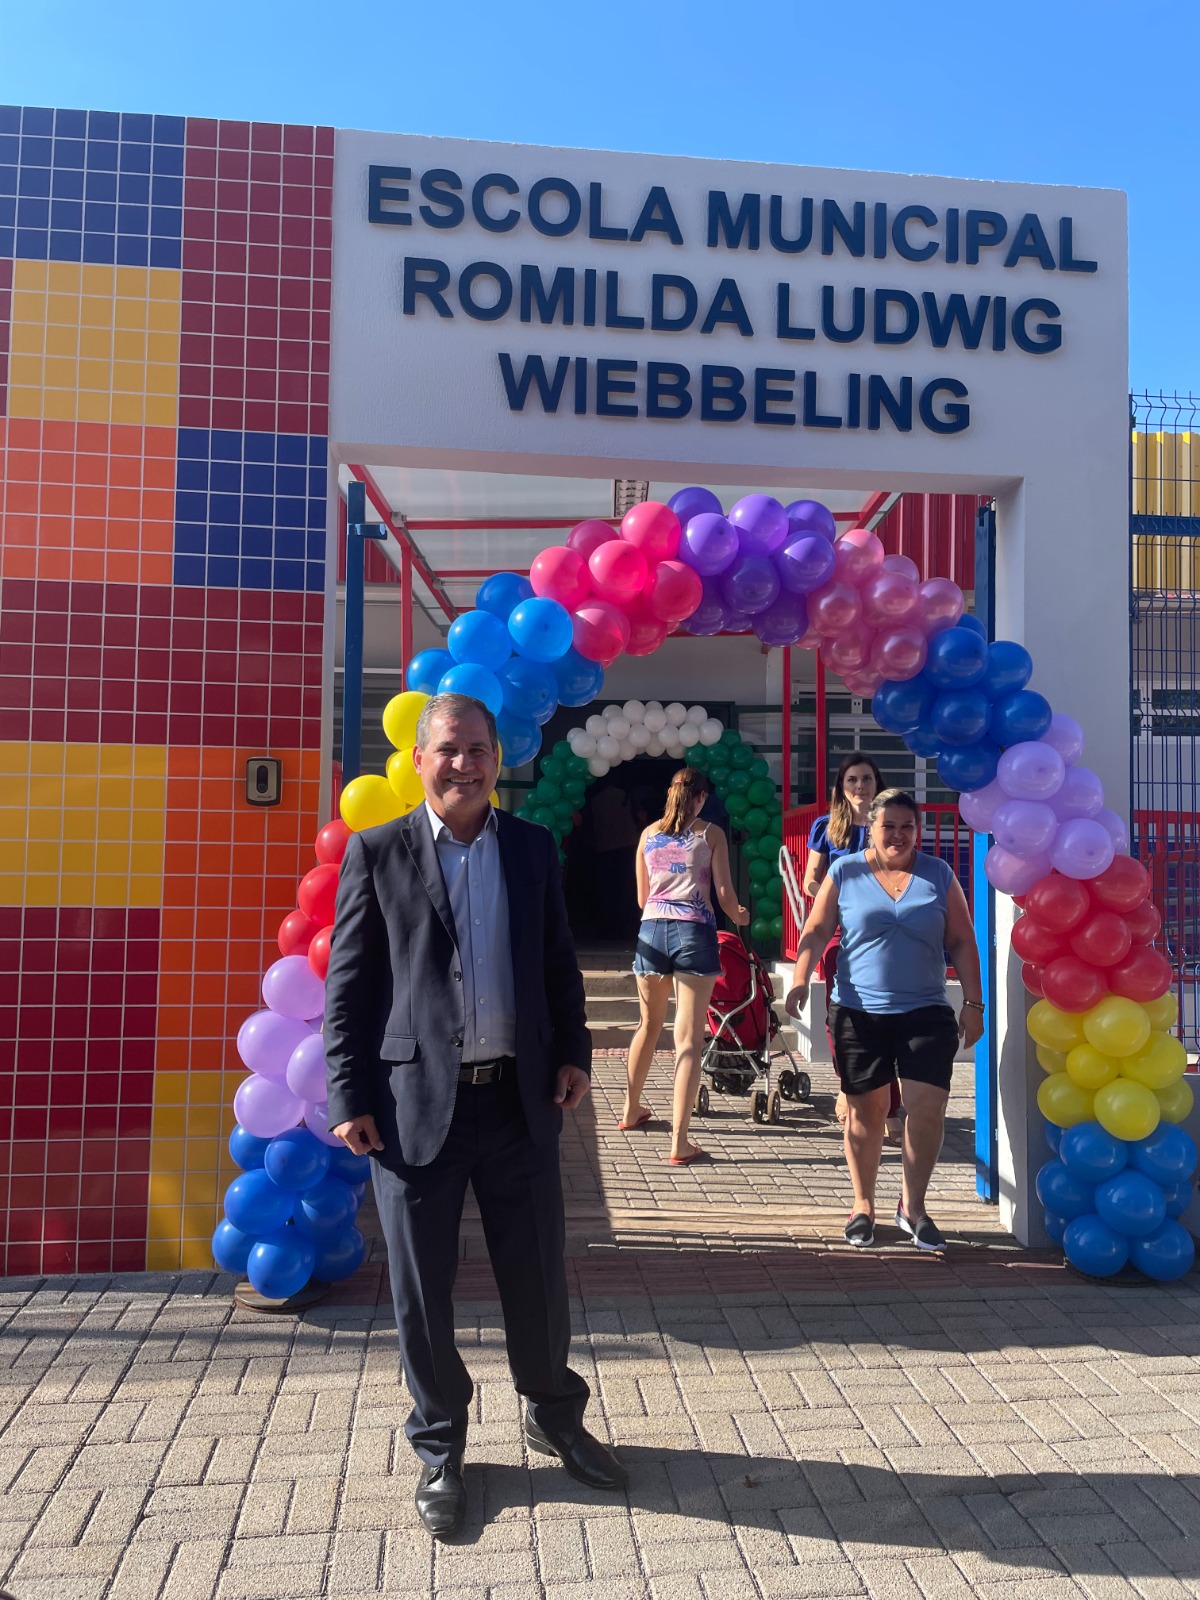 OAB Cascavel participa de inauguração da Escola Municipal Romilda Ludwig Wiebbeling